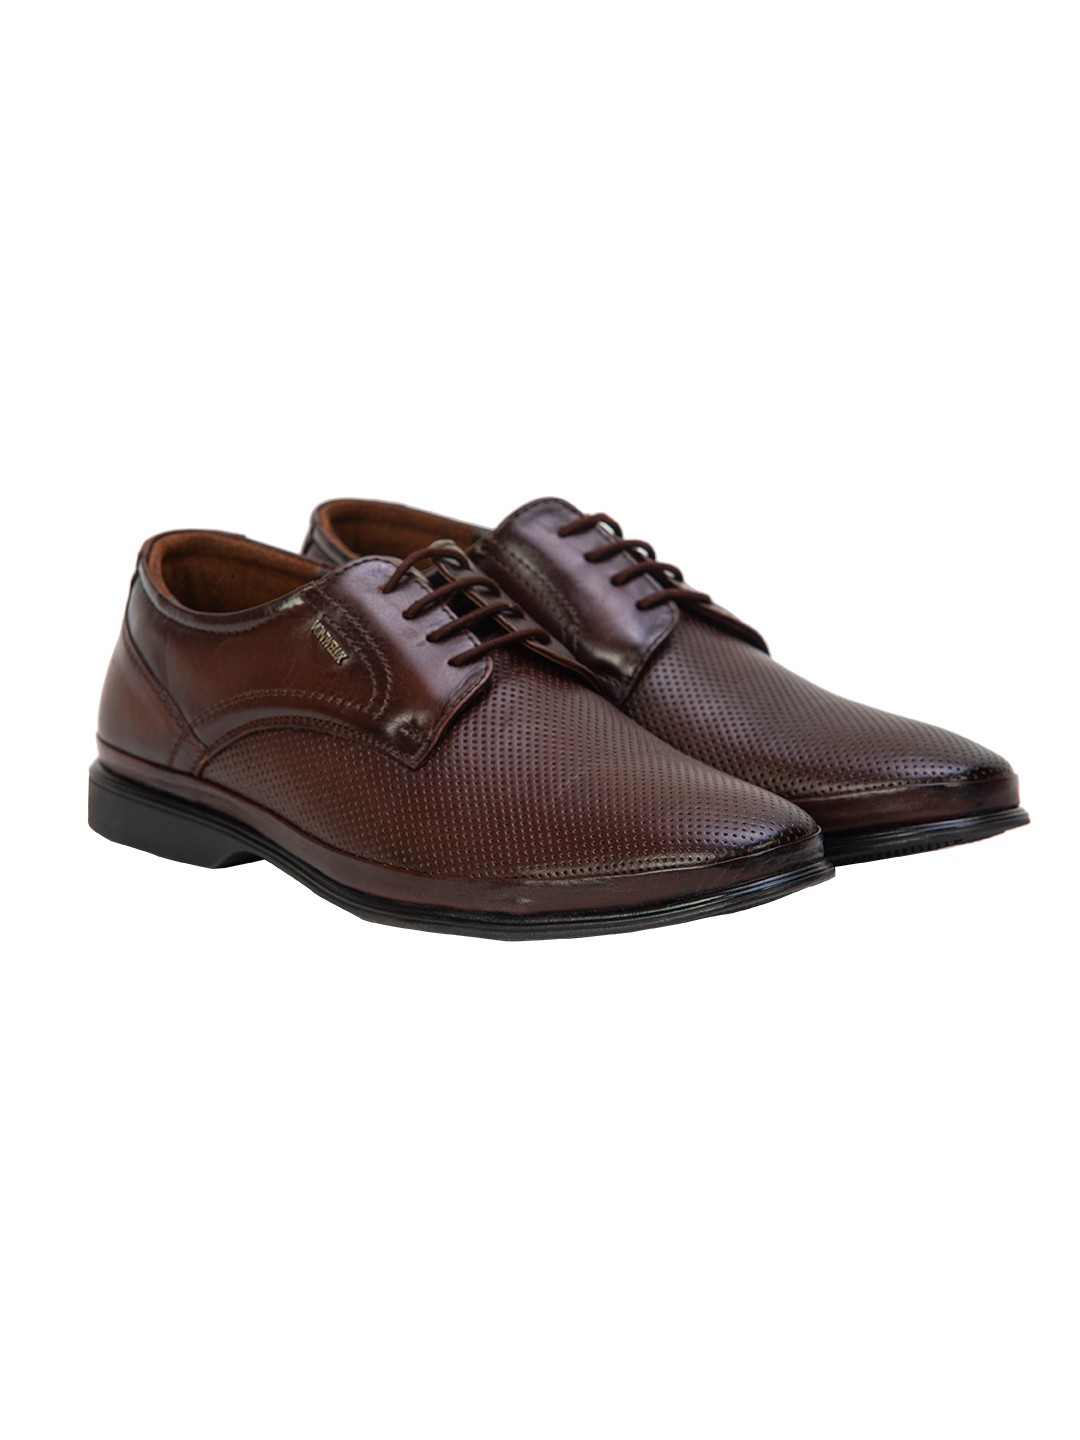 Buy Von Wellx Germany Comfort Coen Brown Shoes Online in Allahabad